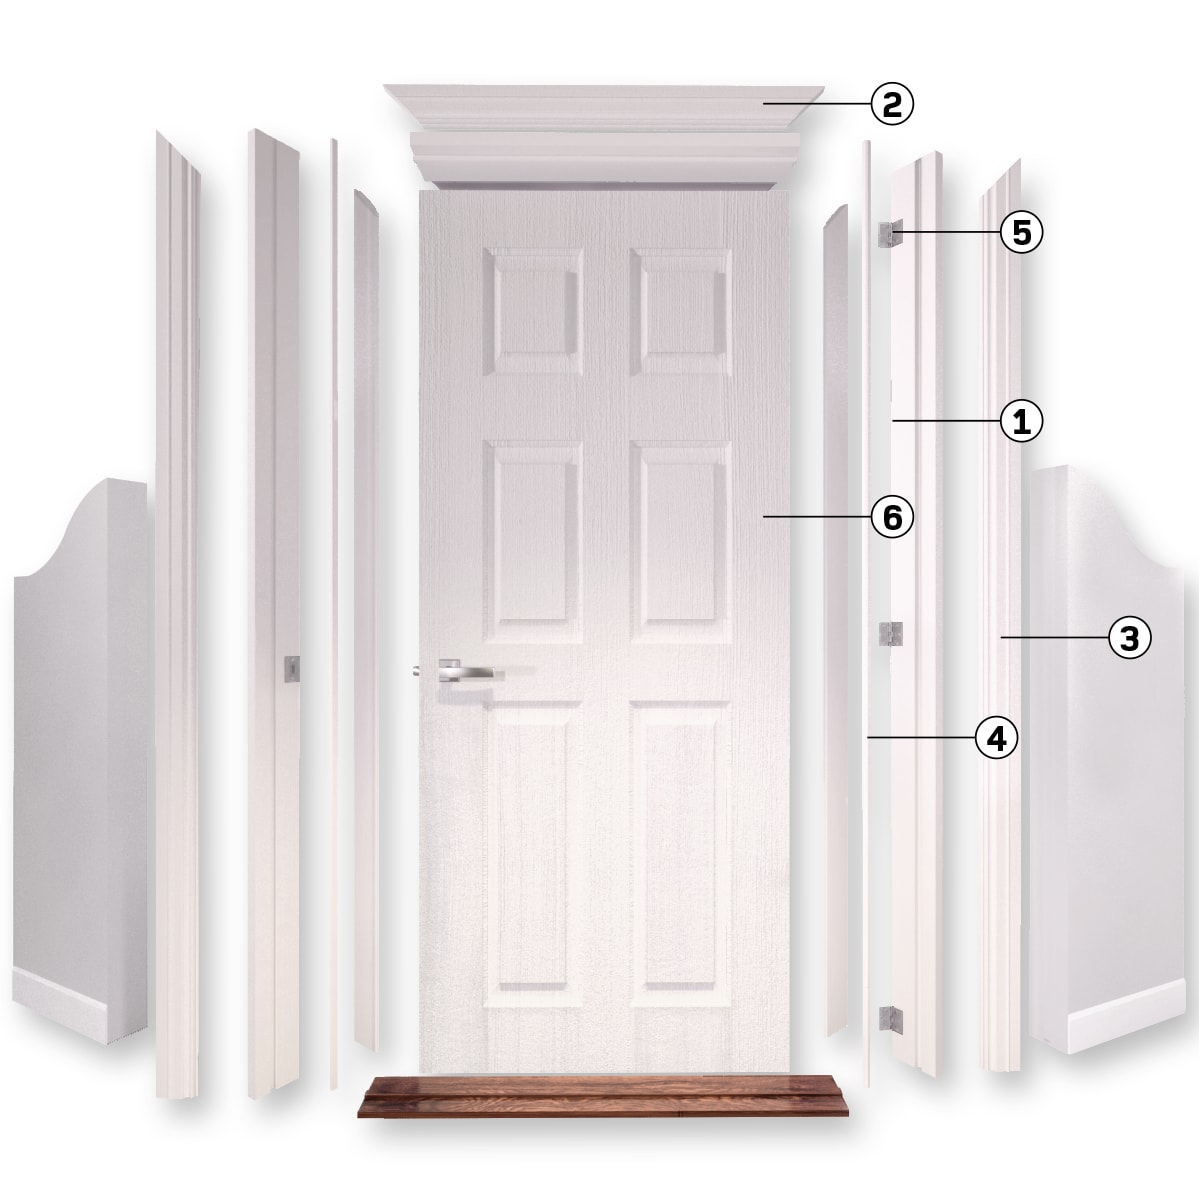 Schéma illustrant les parties d’une porte intérieure